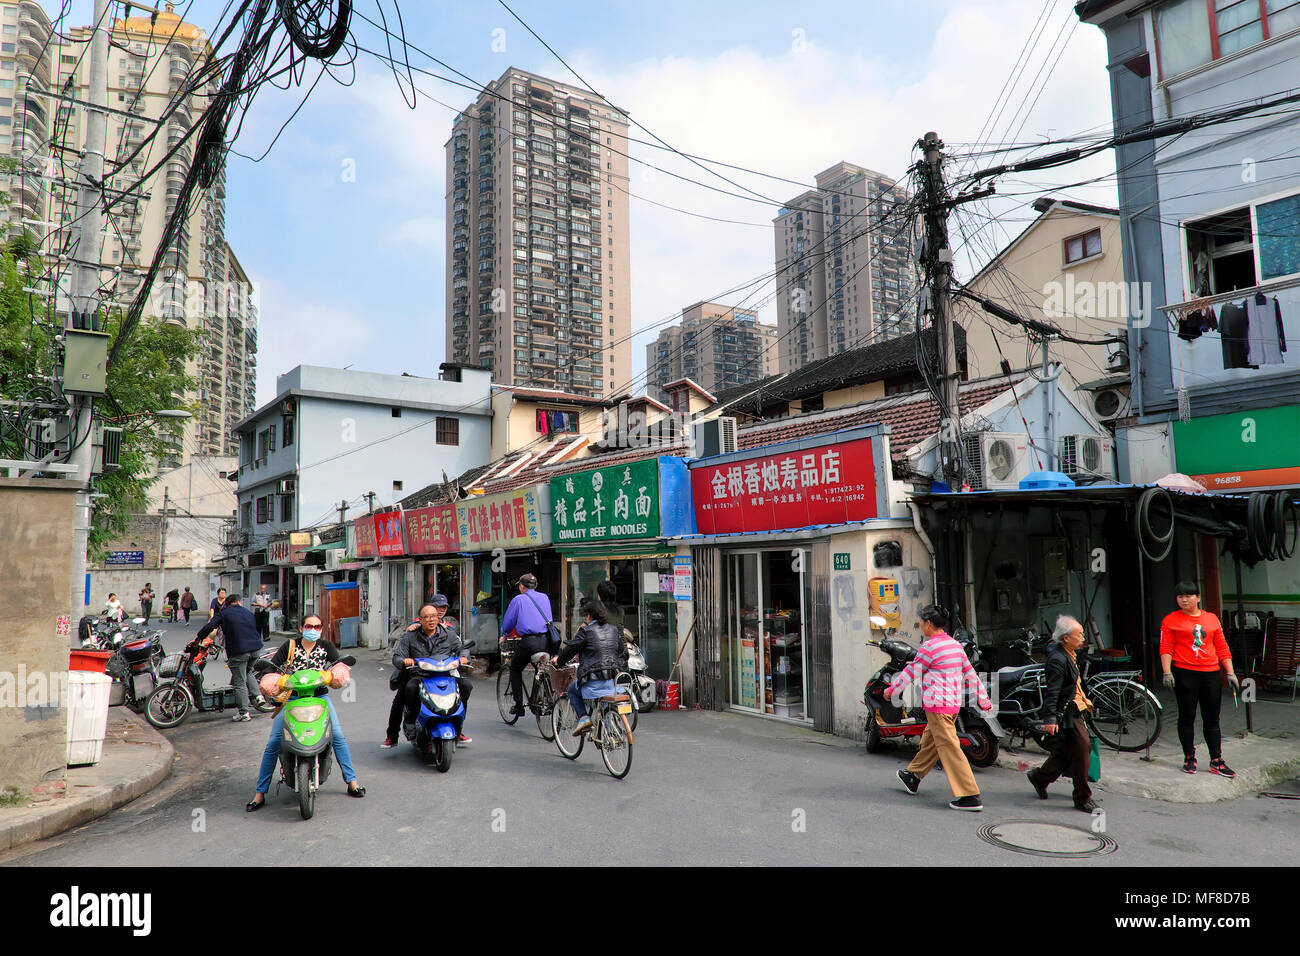 Teil des alten Shanghai mit neueren Tower Blocks im Hintergrund, Shanghai, China Stockfoto